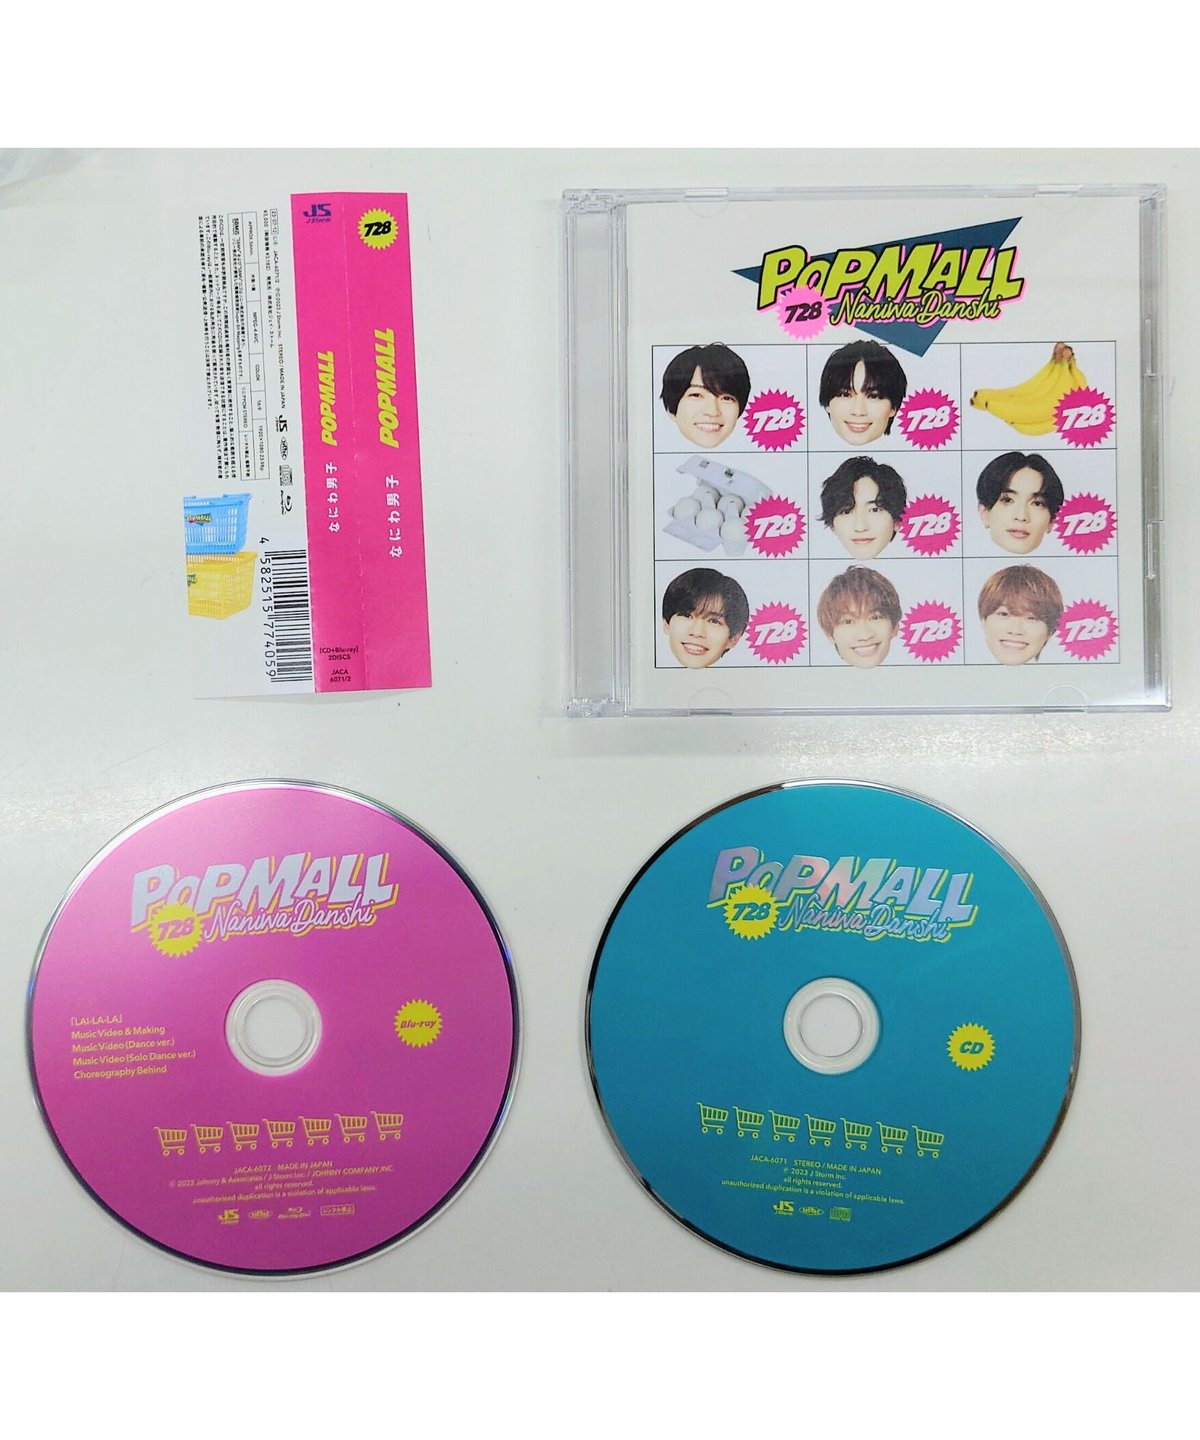 なにわ男子 2nd アルバム 『POPMALL』[初回限定盤②] CD+Blu-ray 